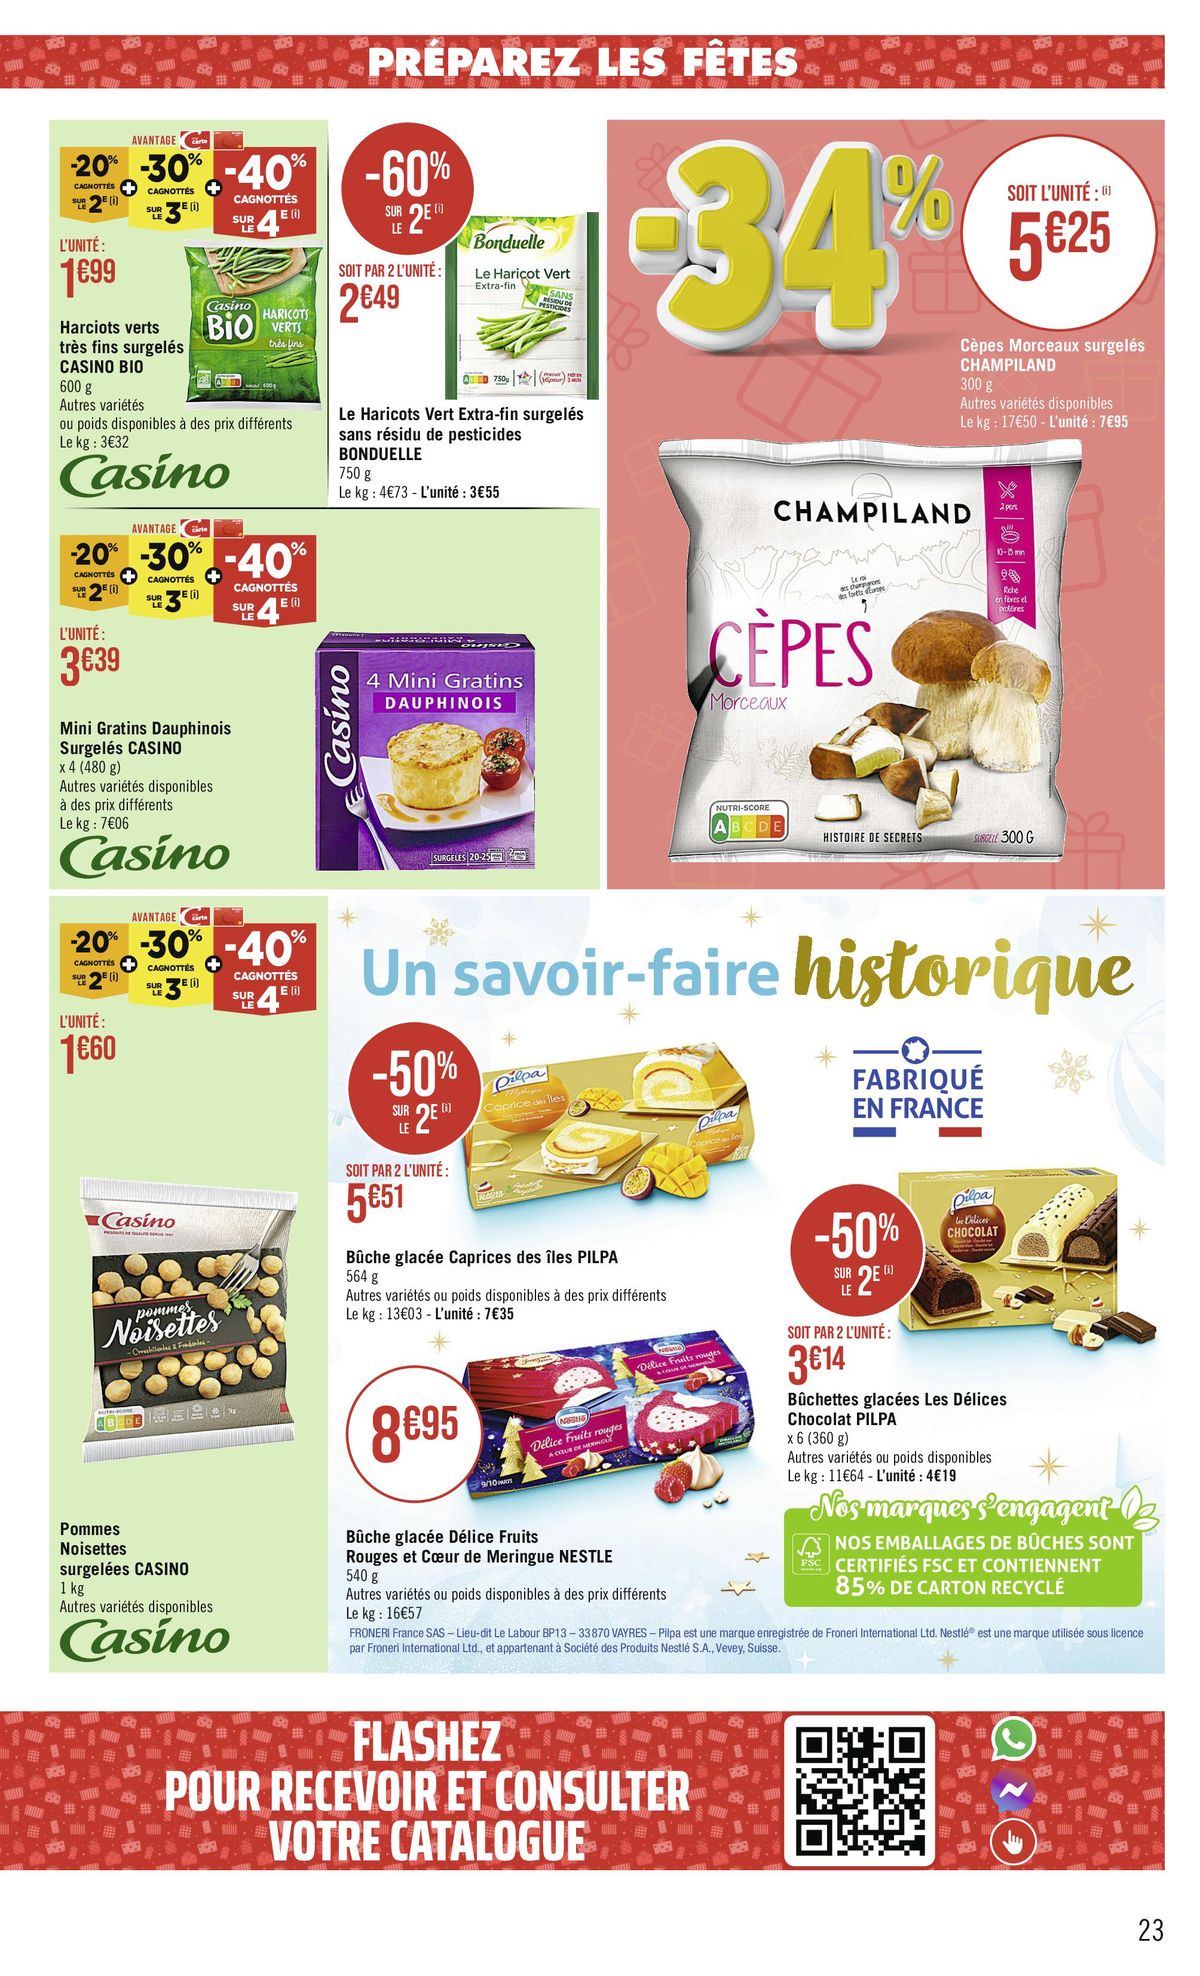 Catalogue -68 % CAGNOTTÉS SUR LE 2€, page 00023